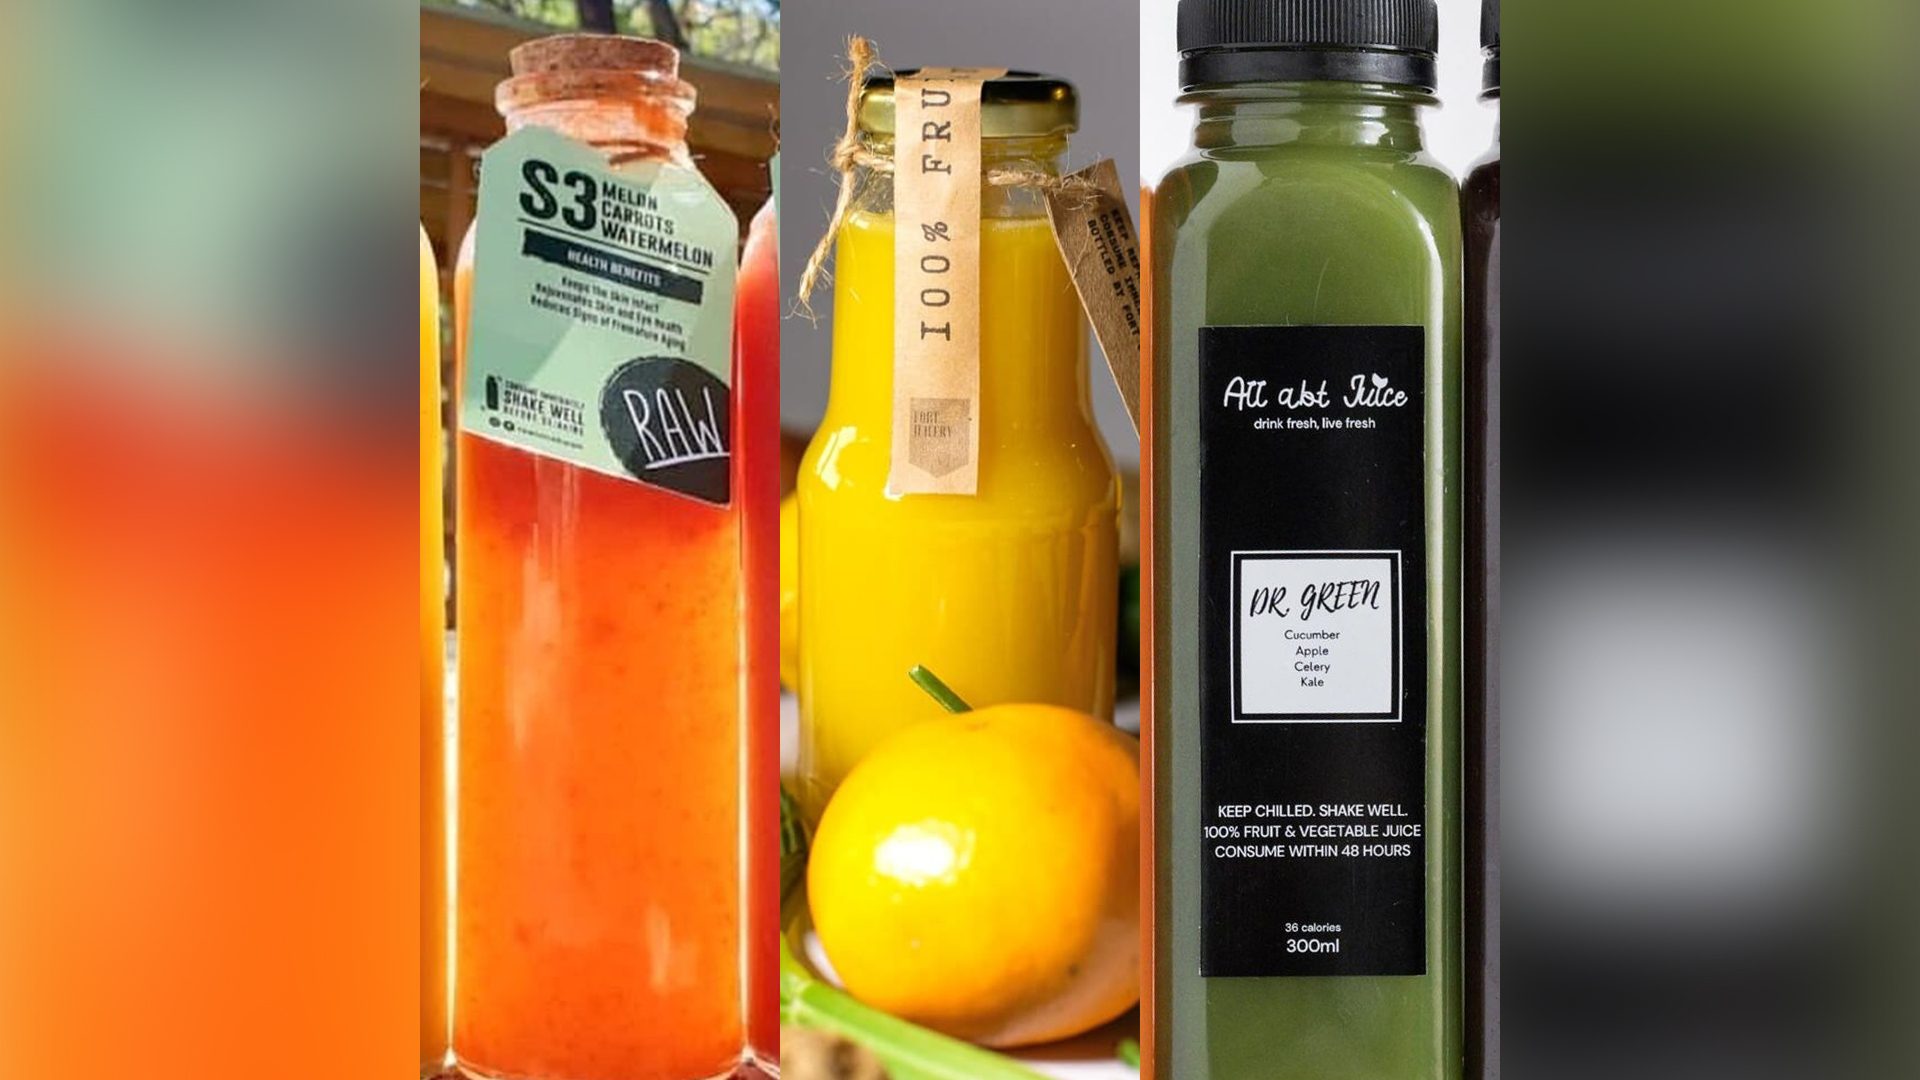 Apple Juice in glass bottles - Veg Box Fresh